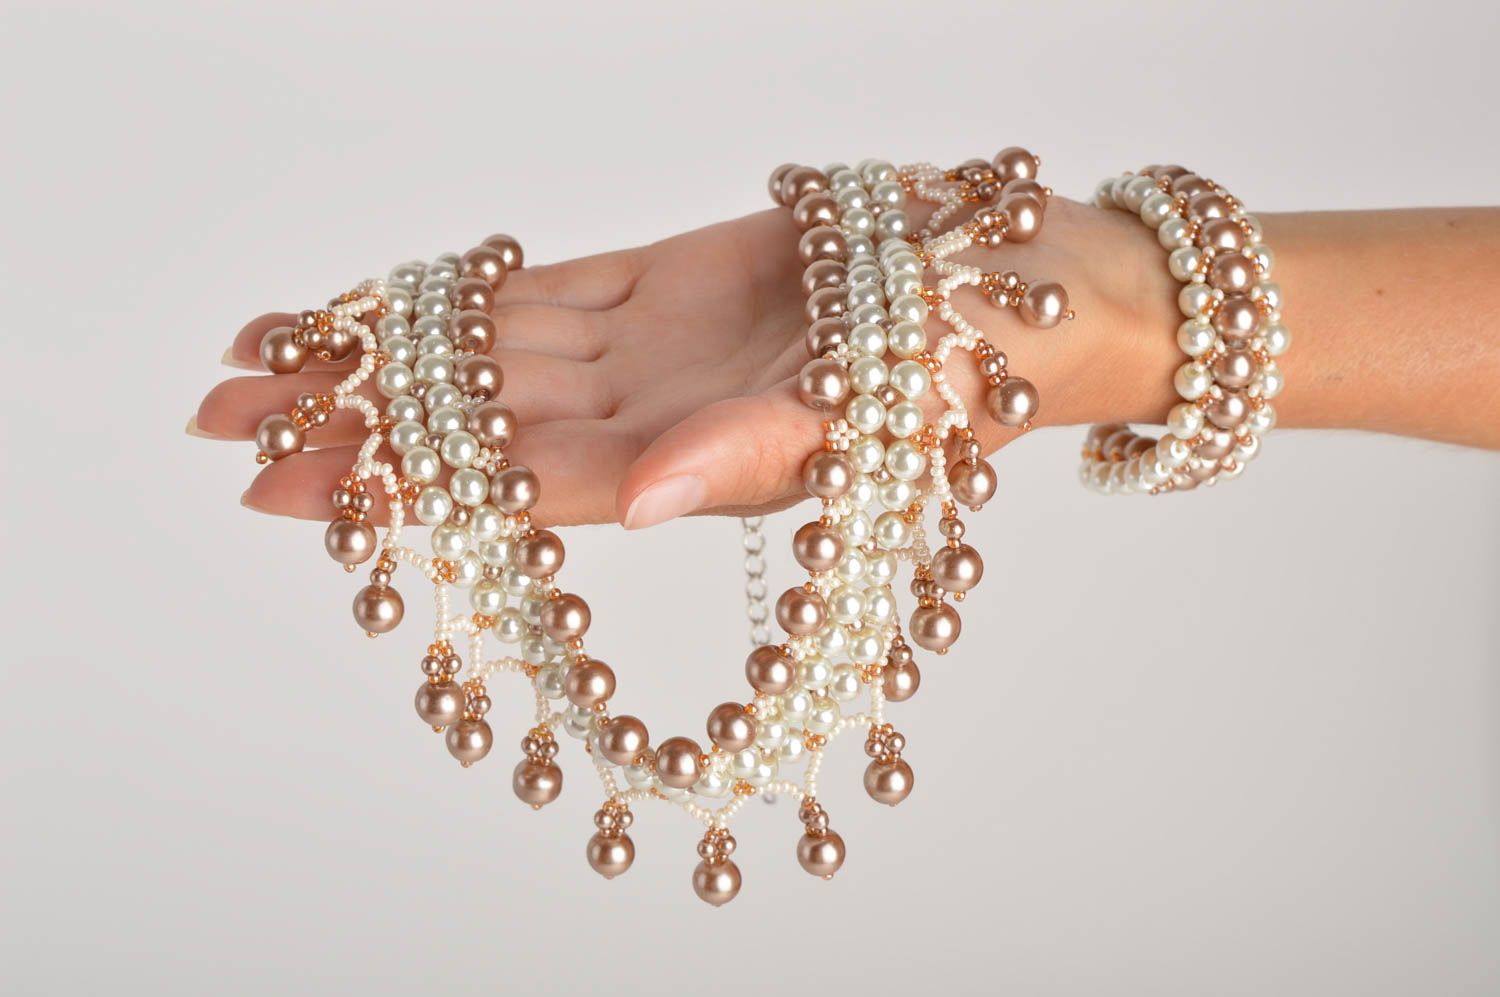 Handmade beaded jewelry set stylish elegant necklace elite wrist bracelet photo 5